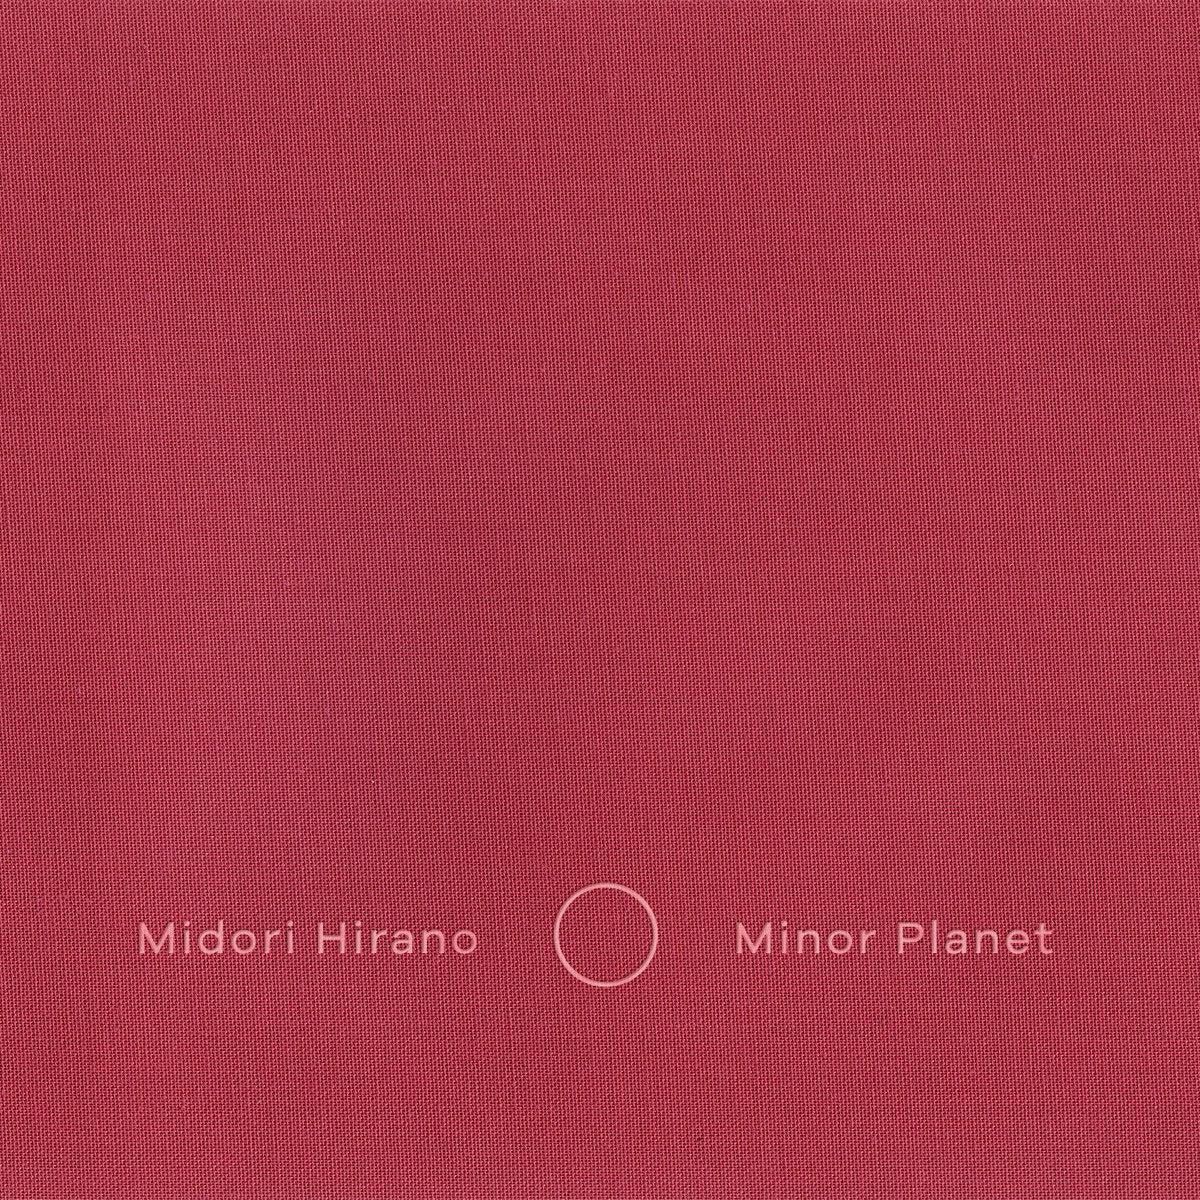 Midori Hirano - Minor Planet